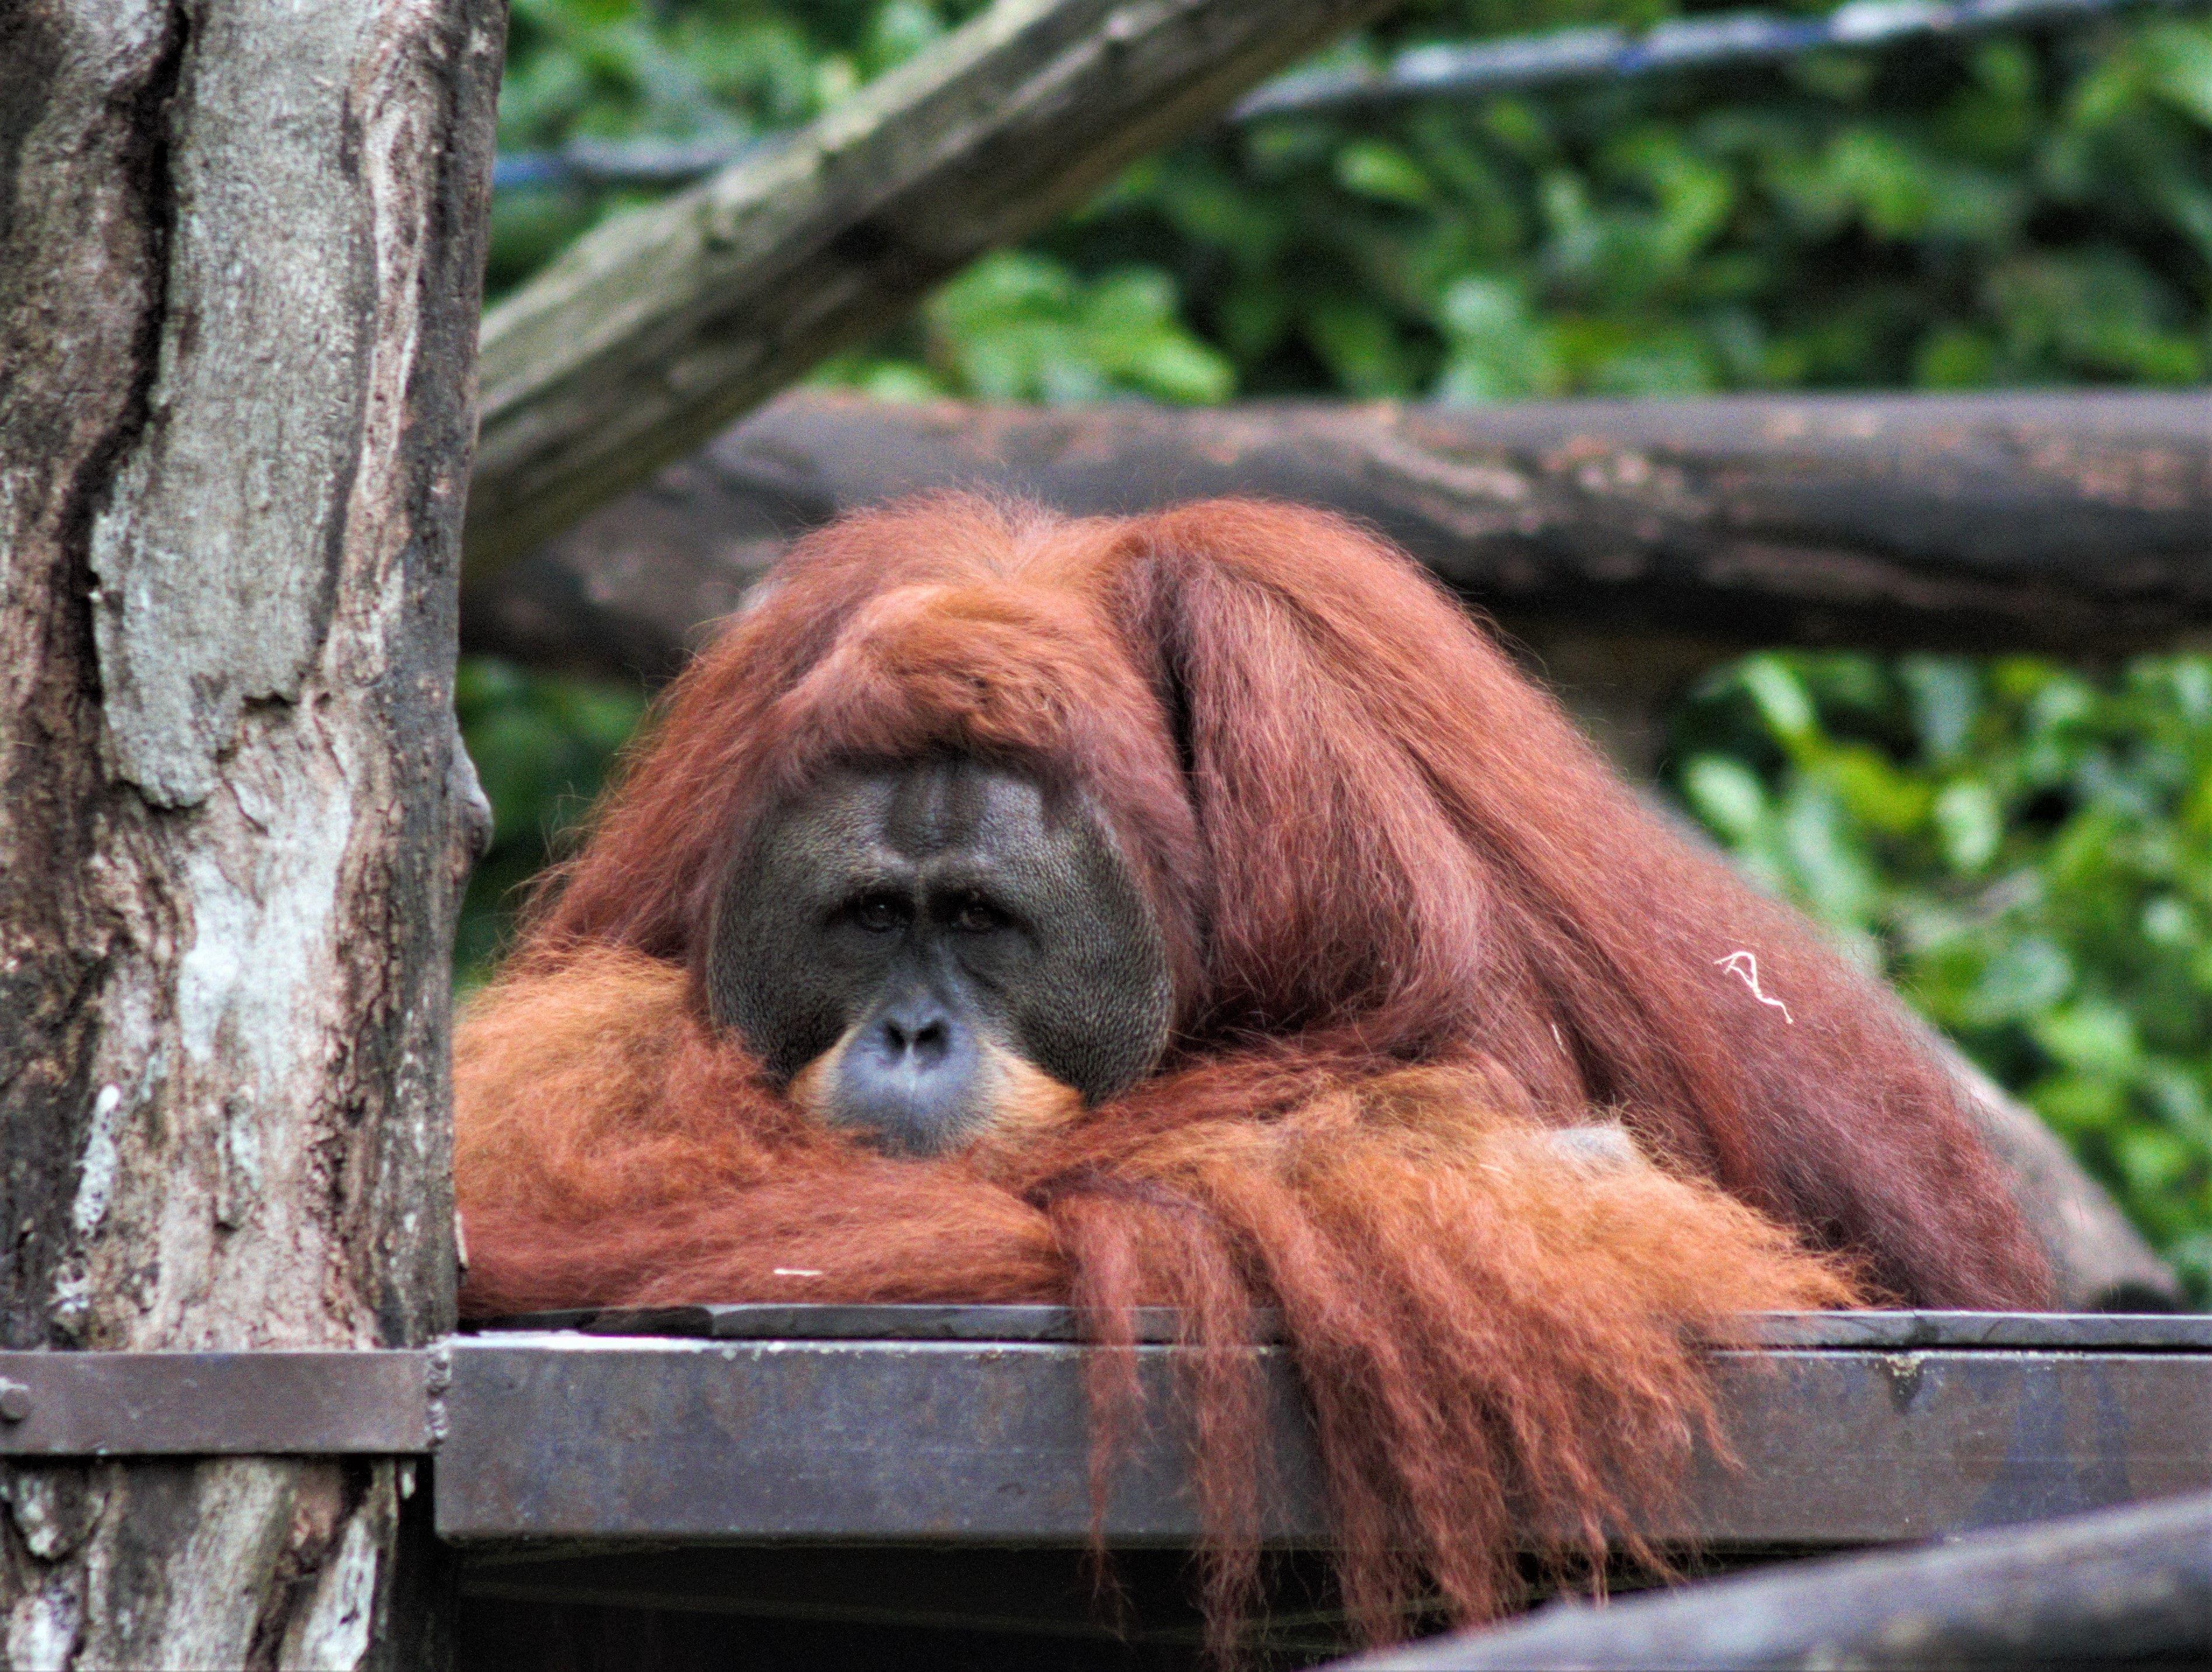 Orangutan in Singapore Zoo